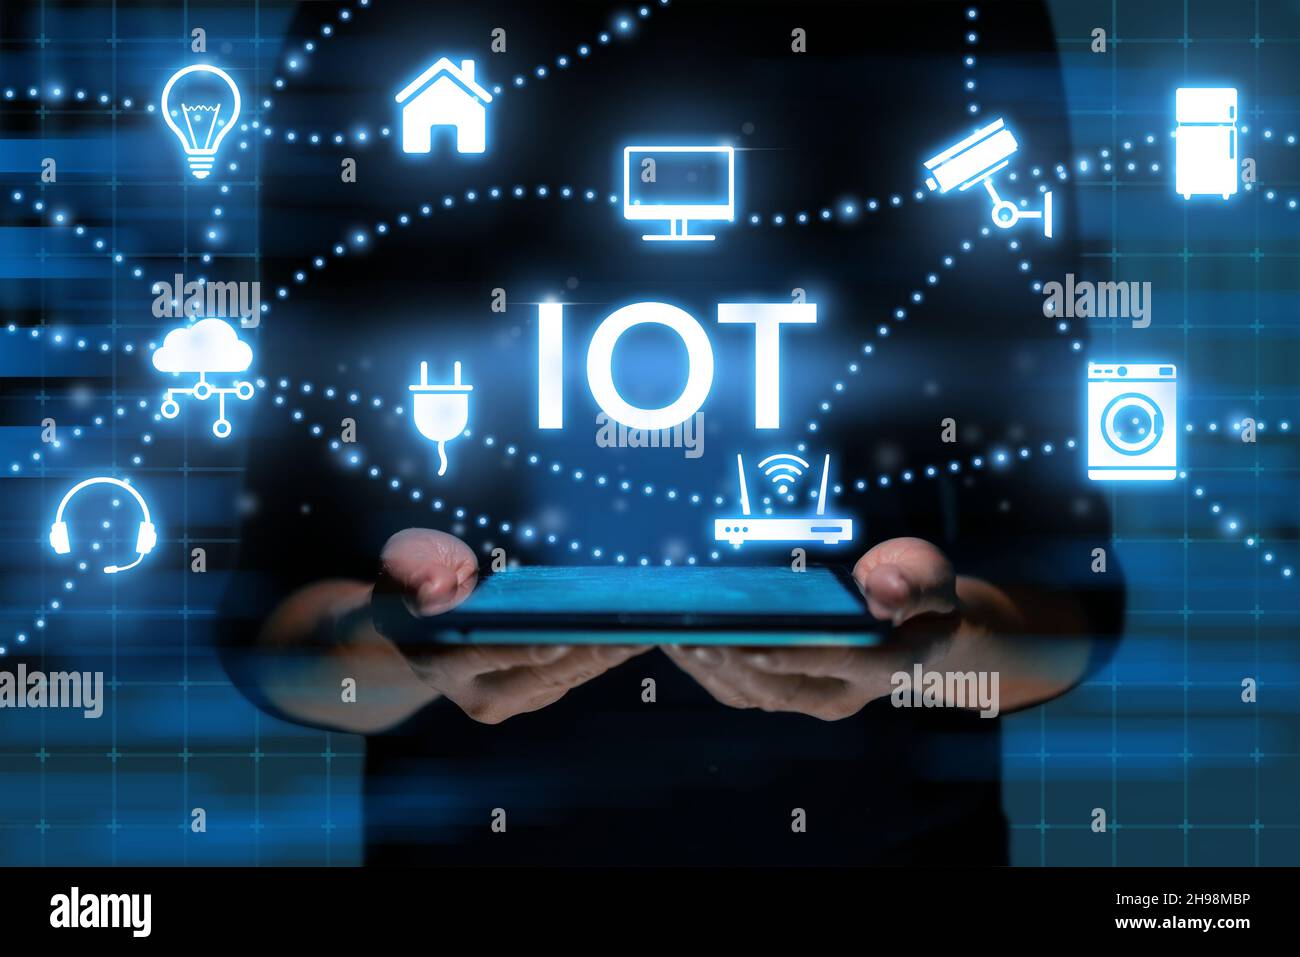 IoT- oder Internet of Things-Konzept. Die Person steuert Ausrüstung und Sicherheit über ein Tablet in den Händen. Stockfoto